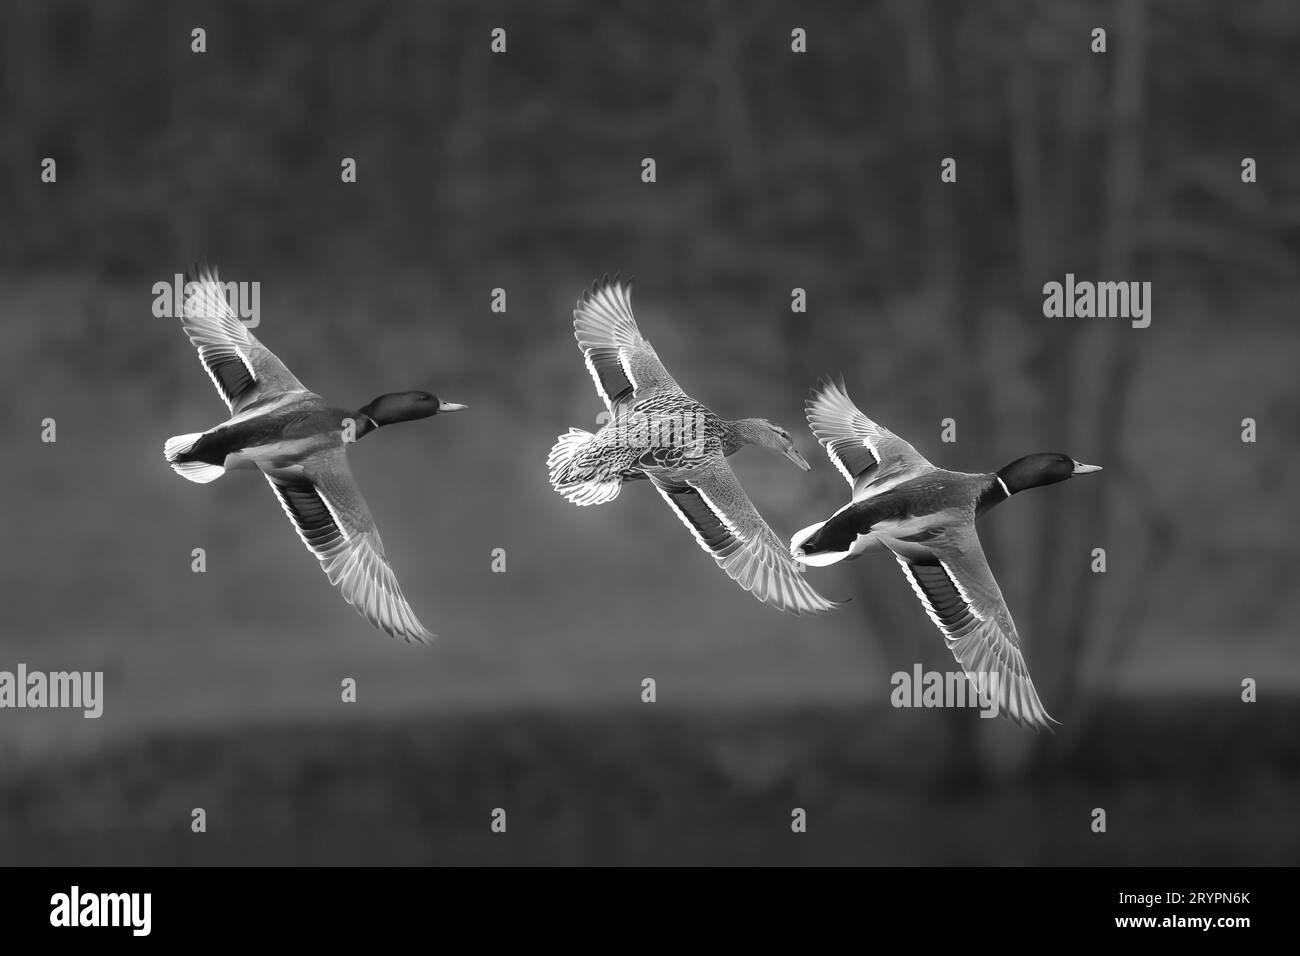 Stockenten (Anas platyrhynchos). Zwei Drachen und eine Ente im Flug. Stockfoto